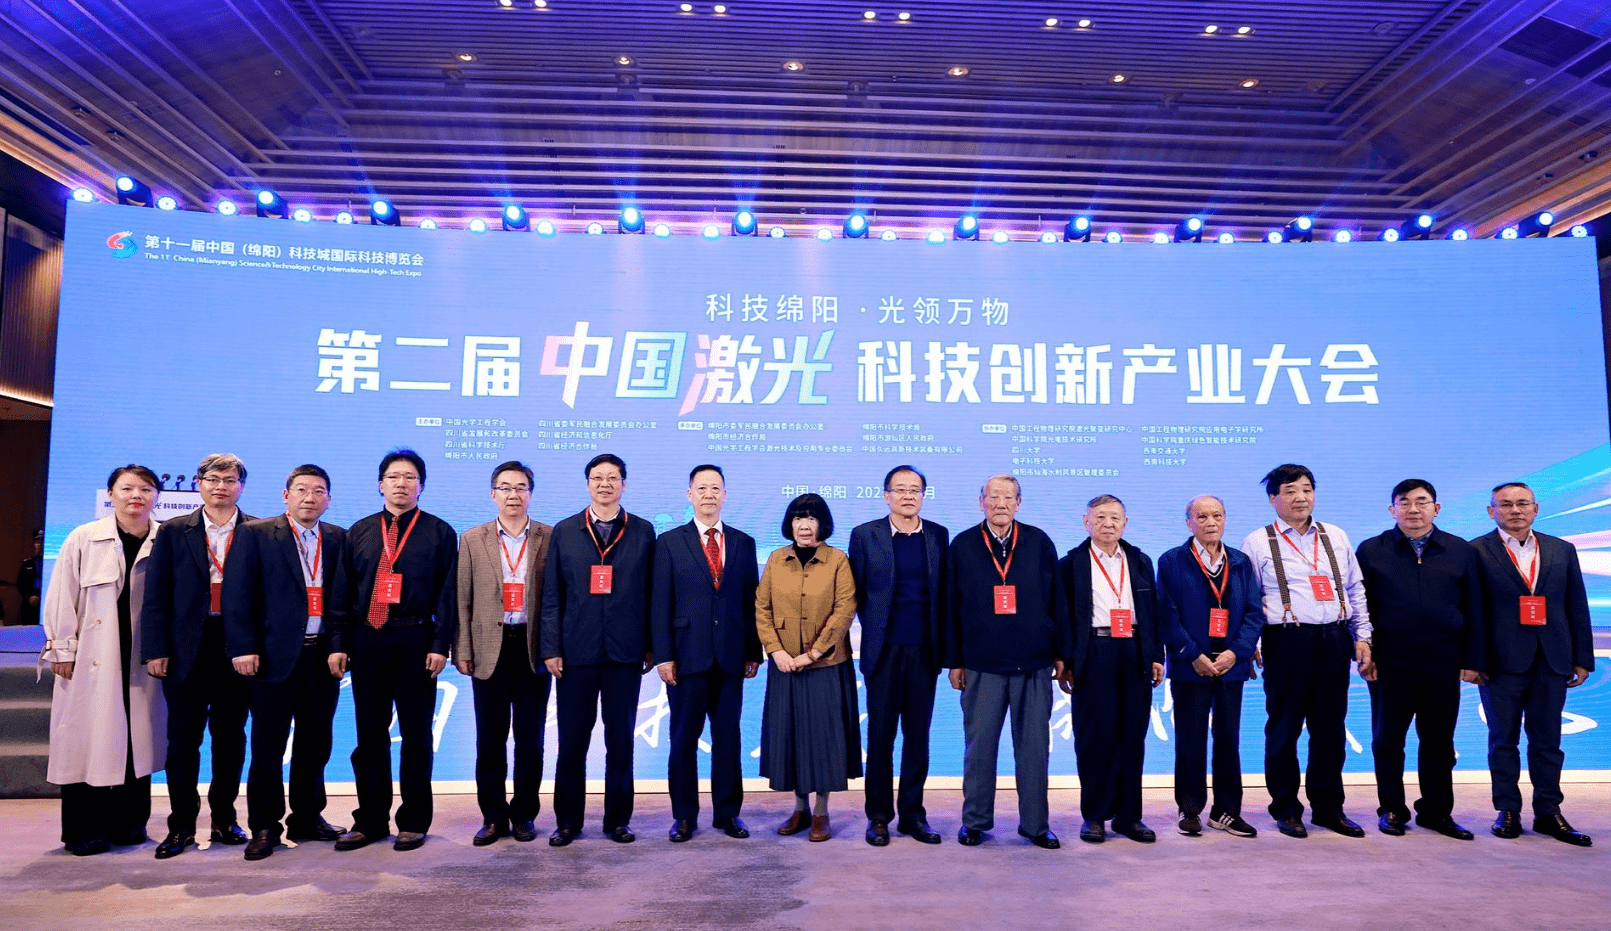 第二屆中國激光科技創新產業大會成功舉辦 賦能川渝激光產業發展